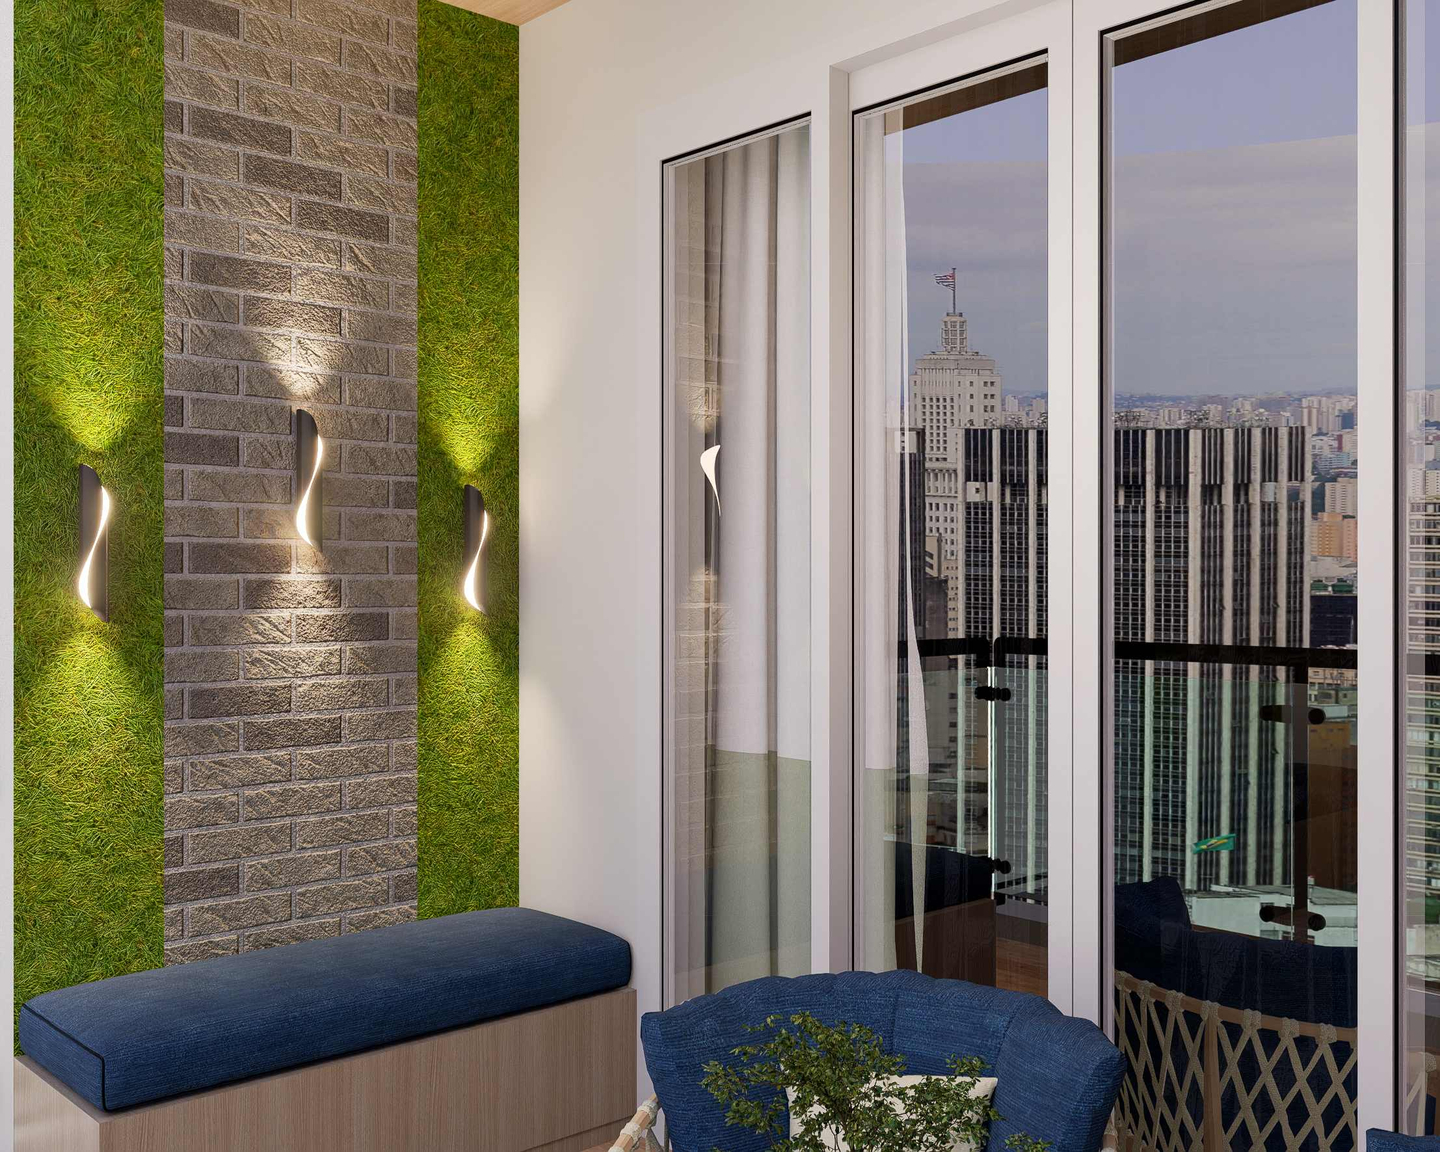 Tropical Balcony Design With Vertical Garden